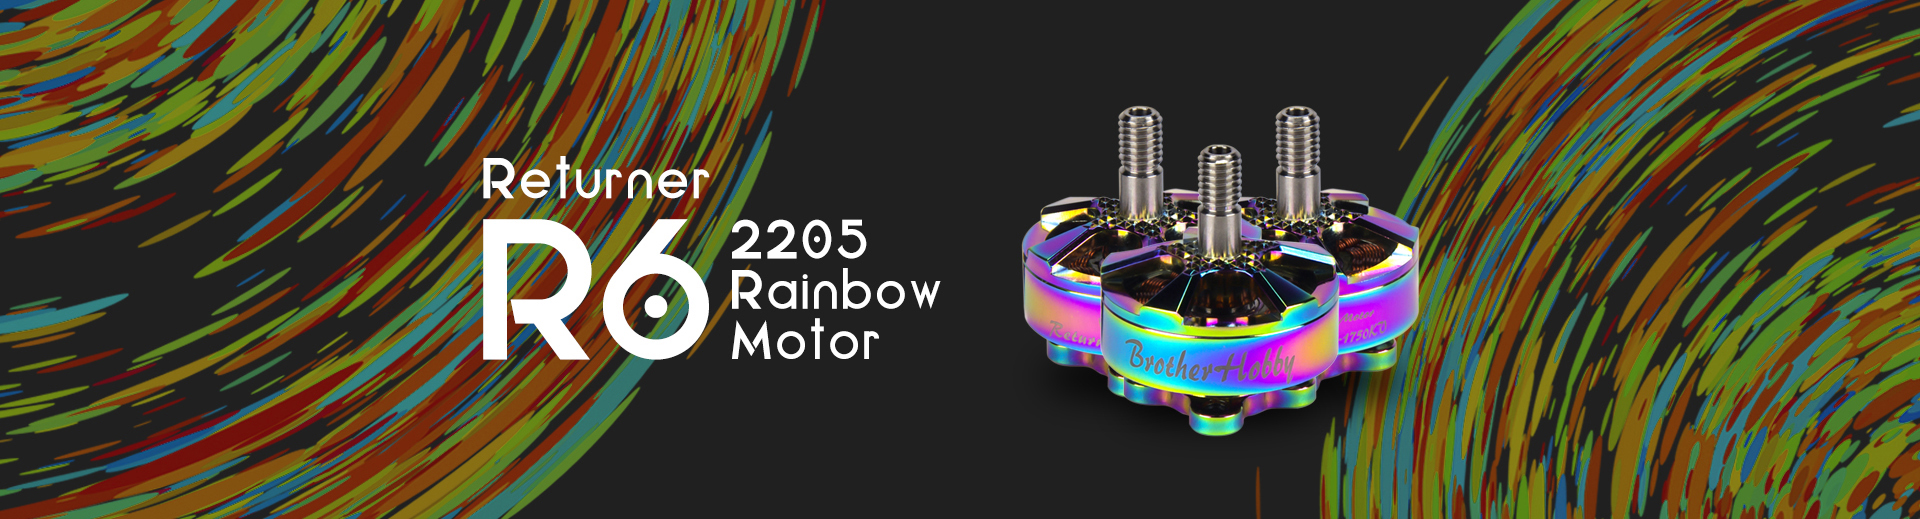 Returner R6 2205 Rainbow Motor